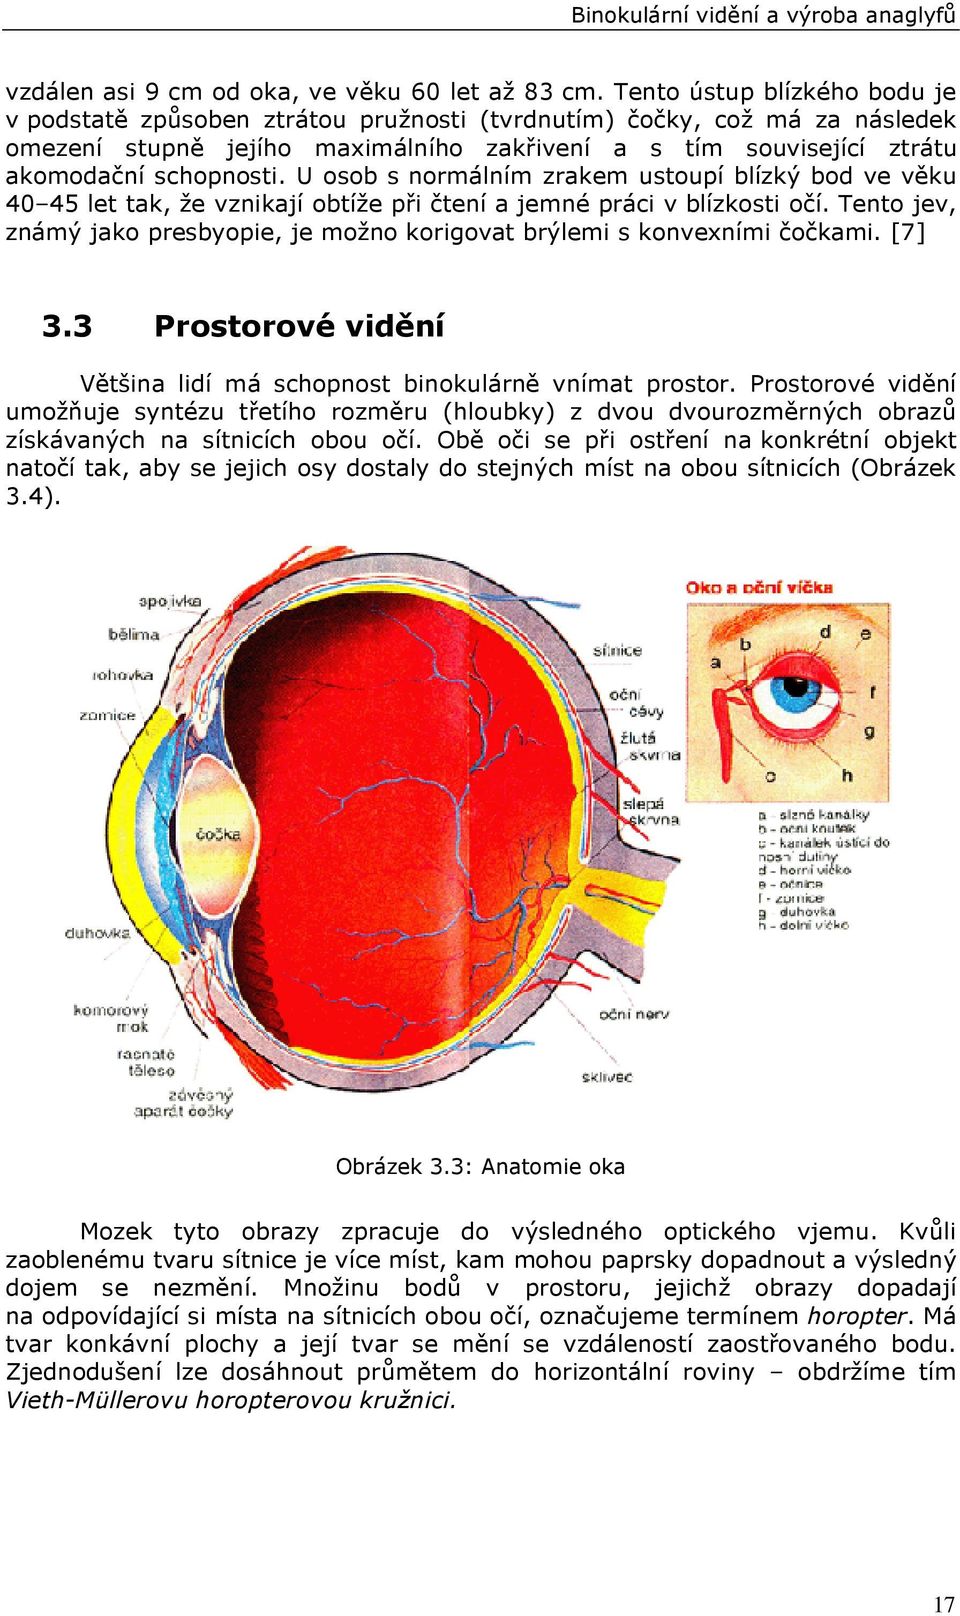 U osob s normálním zrakem ustoupí blízký bod ve věku 40 45 let tak, že vznikají obtíže při čtení a jemné práci v blízkosti očí.